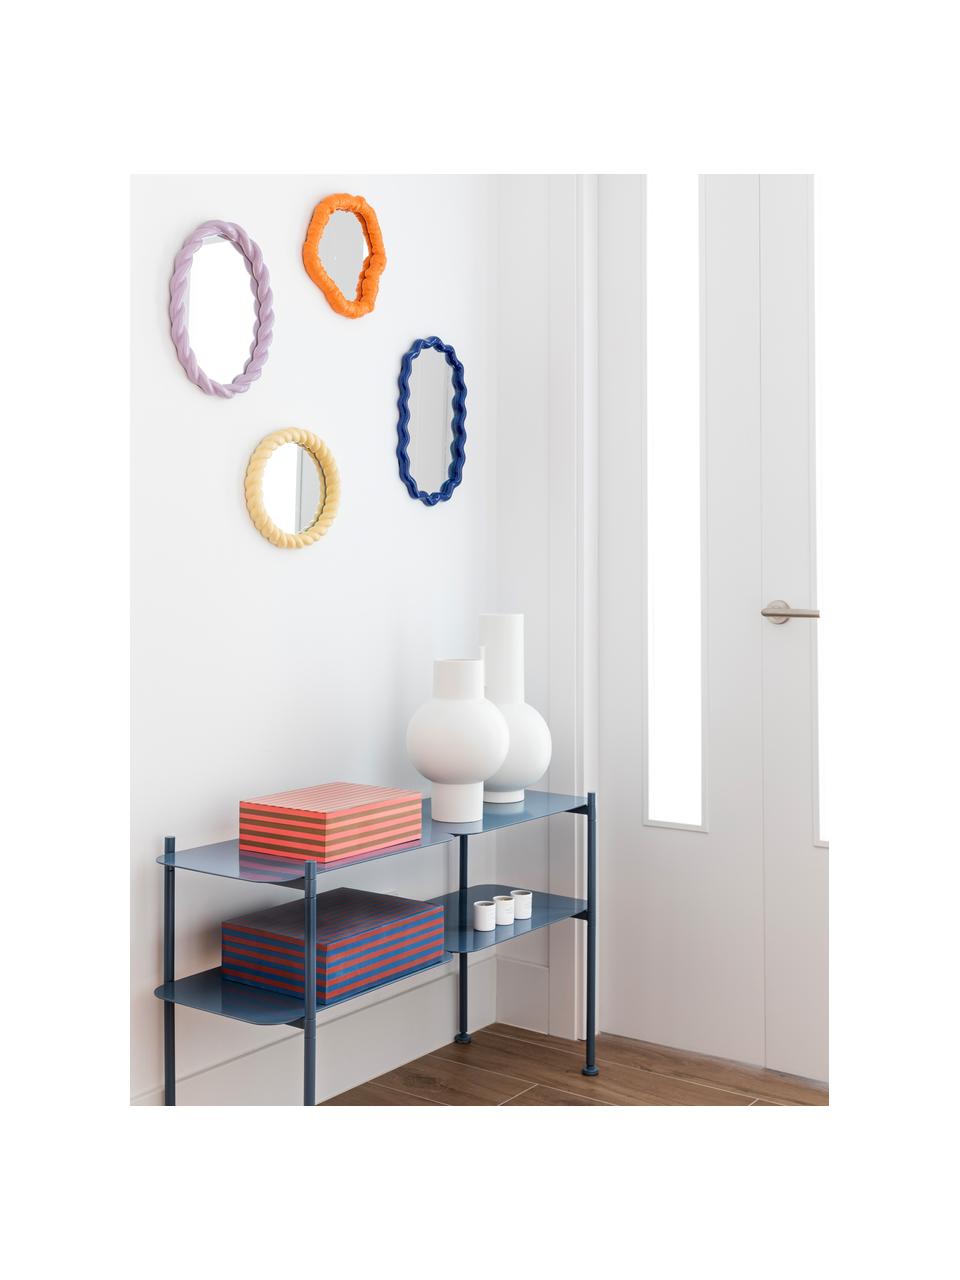 Wandspiegel Purfect mit orangem Kunststoffrahmen, Rahmen: Polyresin, Spiegelfläche: Spiegelglas, Orange, B 25 x H 28 cm